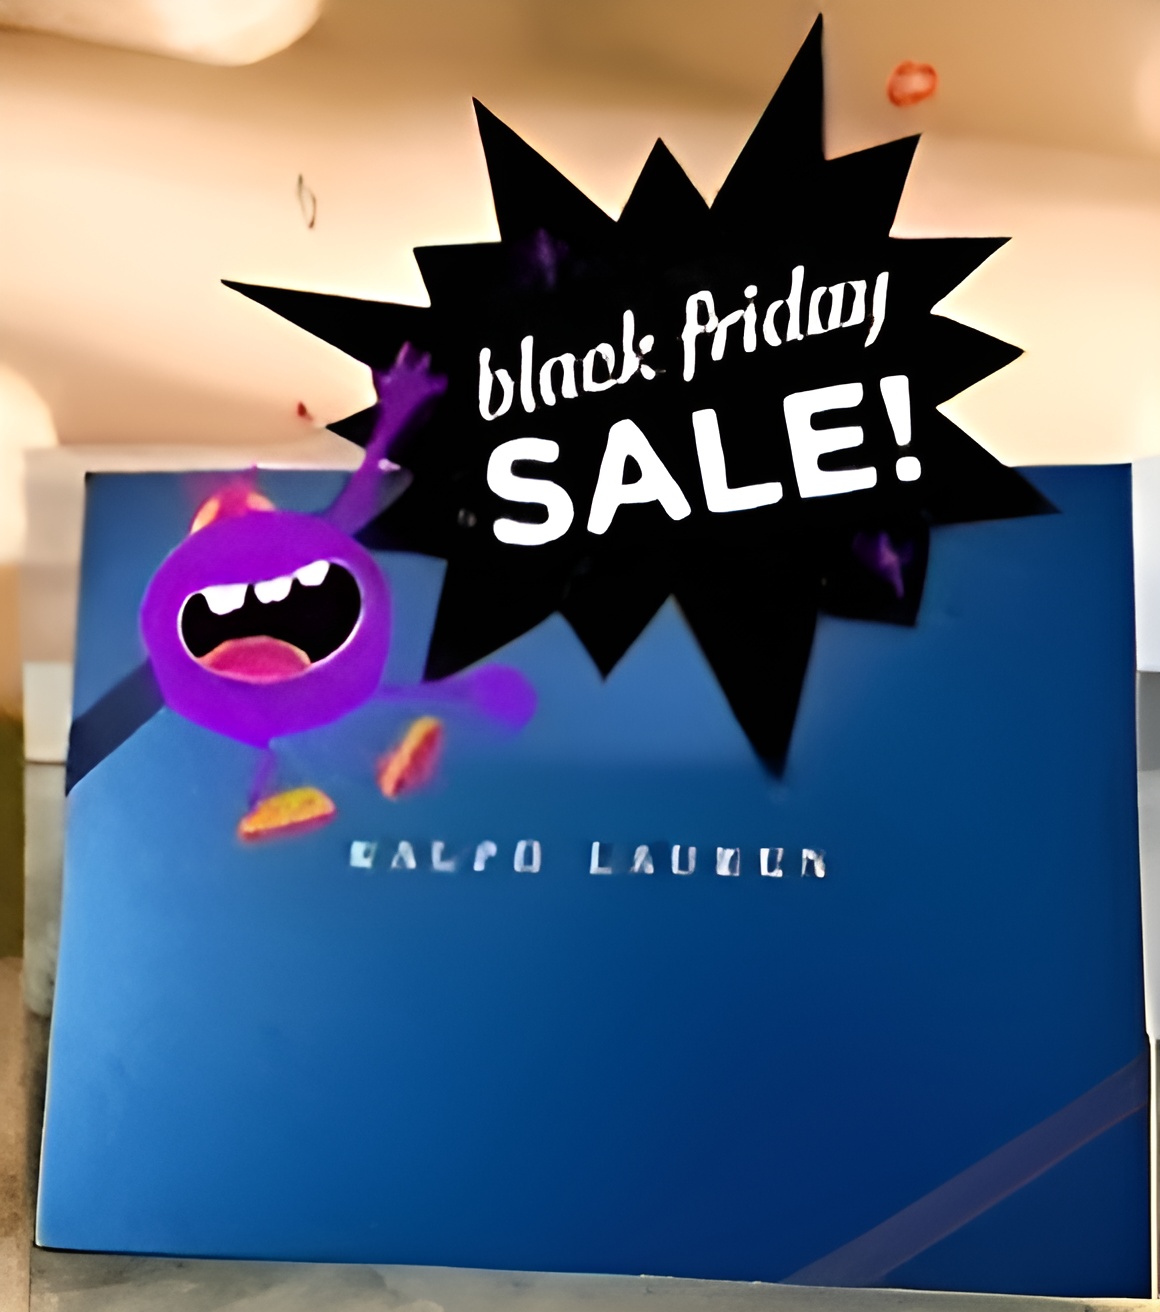 Ralph Lauren Black Friday Deals Featured Image